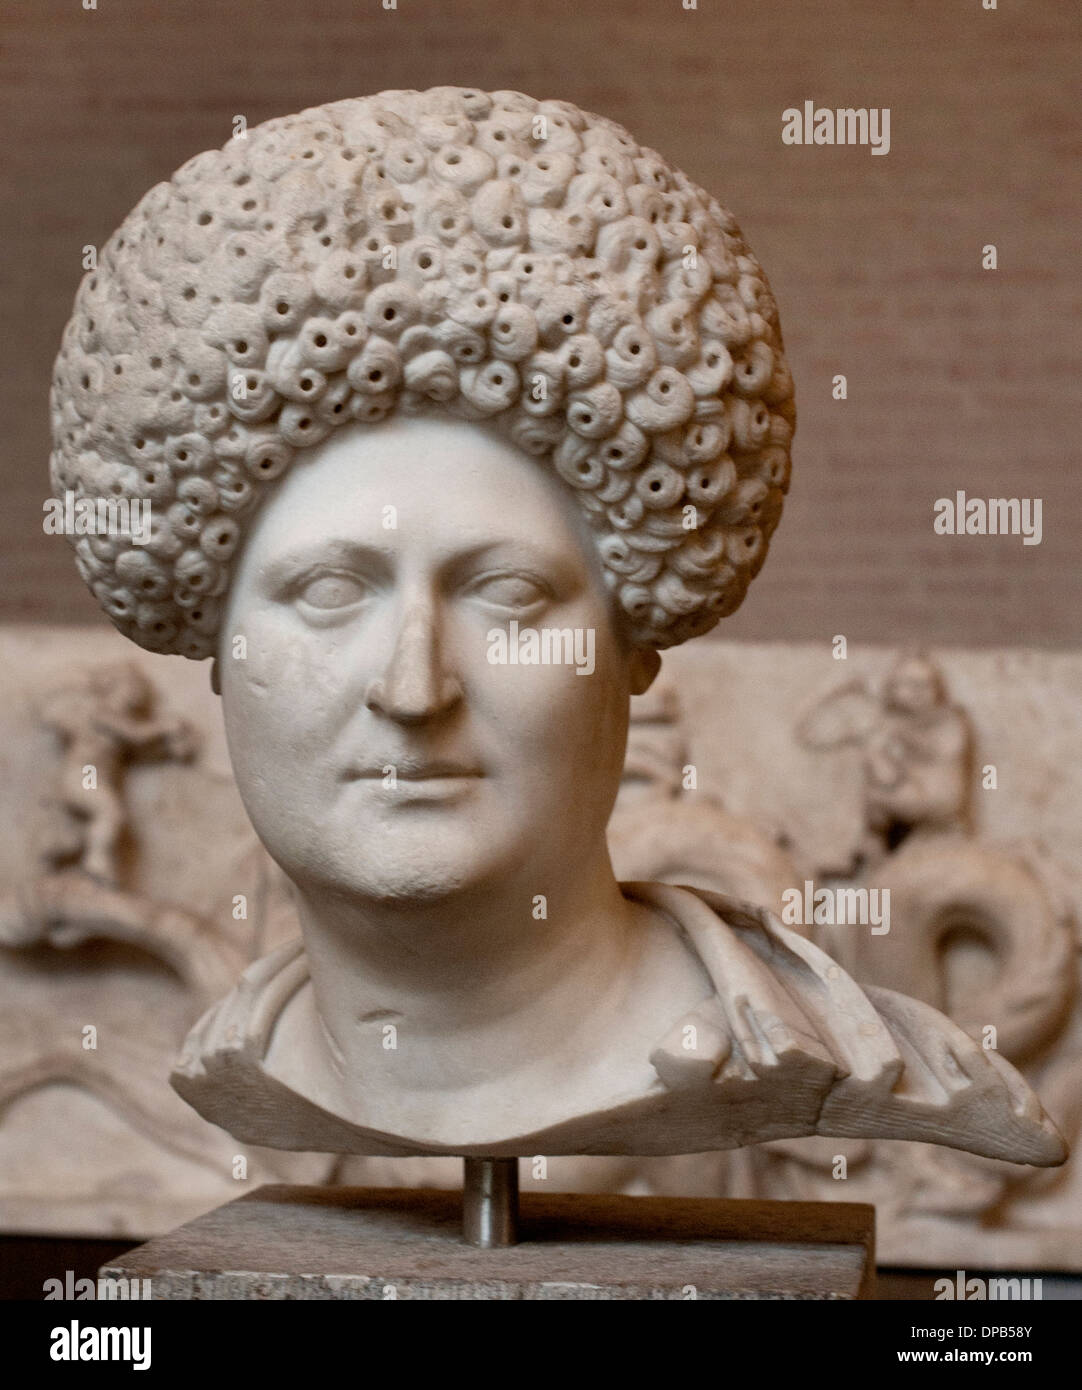 Römerin. 80 CE. Erhöhten Frisuren gemacht durch Mischen von fremden und eigenen Haare Flavian Dynastie am Hof und außerhalb Roms Stockfoto